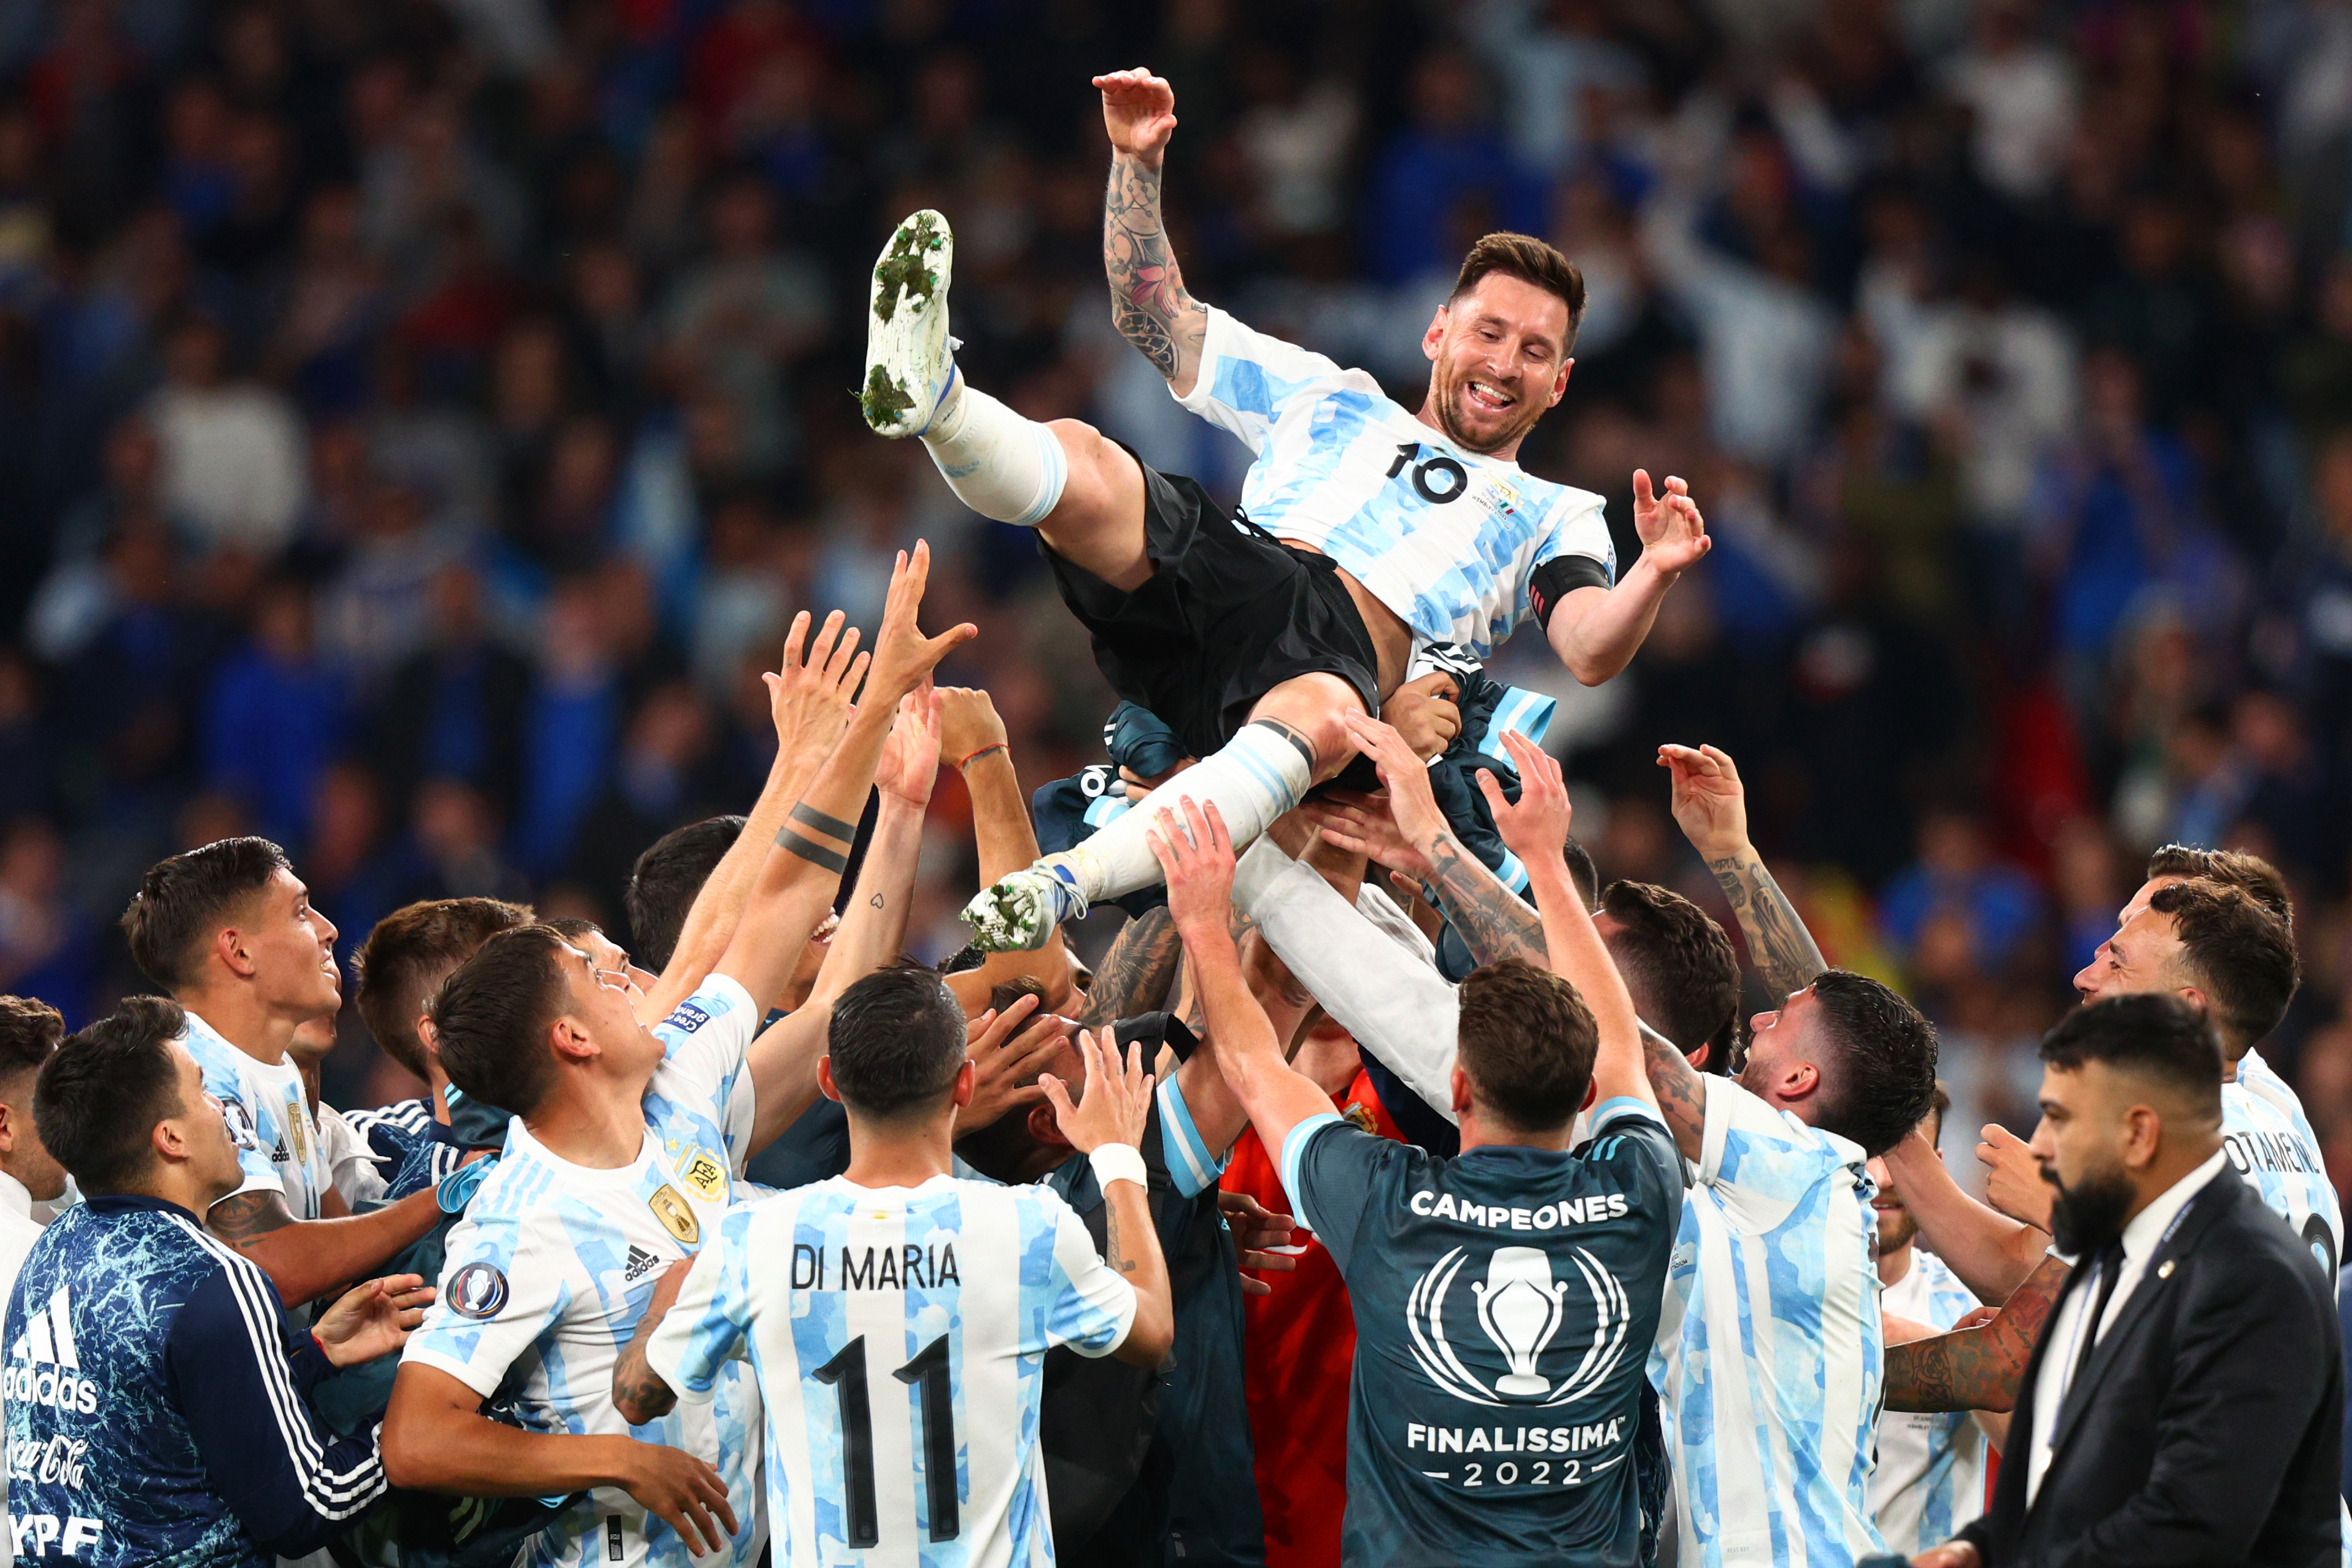 Đừng bỏ lỡ hình ảnh Tuyển Argentina cùng siêu sao Messi trong những trận đấu đầy hấp dẫn. Với Messi trong đội, tuyển Argentina chắc chắn sẽ là một đối thủ đáng gờm trong mọi giải đấu.